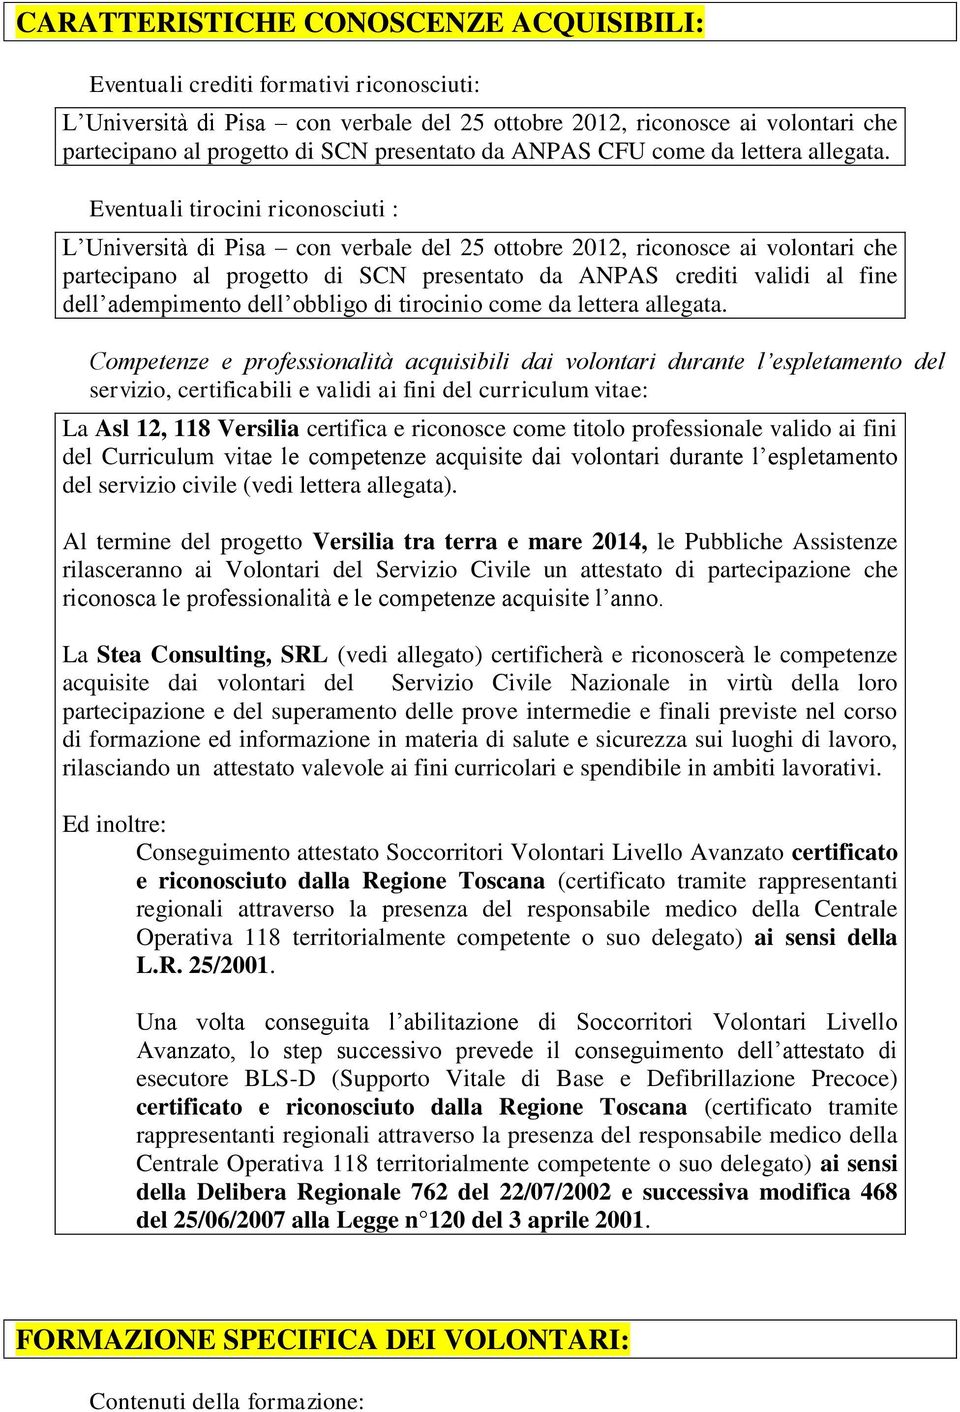 Eventuali tirocini riconosciuti : L Università di Pisa con verbale del 25 ottobre 2012, riconosce ai volontari che partecipano al progetto di SCN presentato da ANPAS crediti validi al fine dell